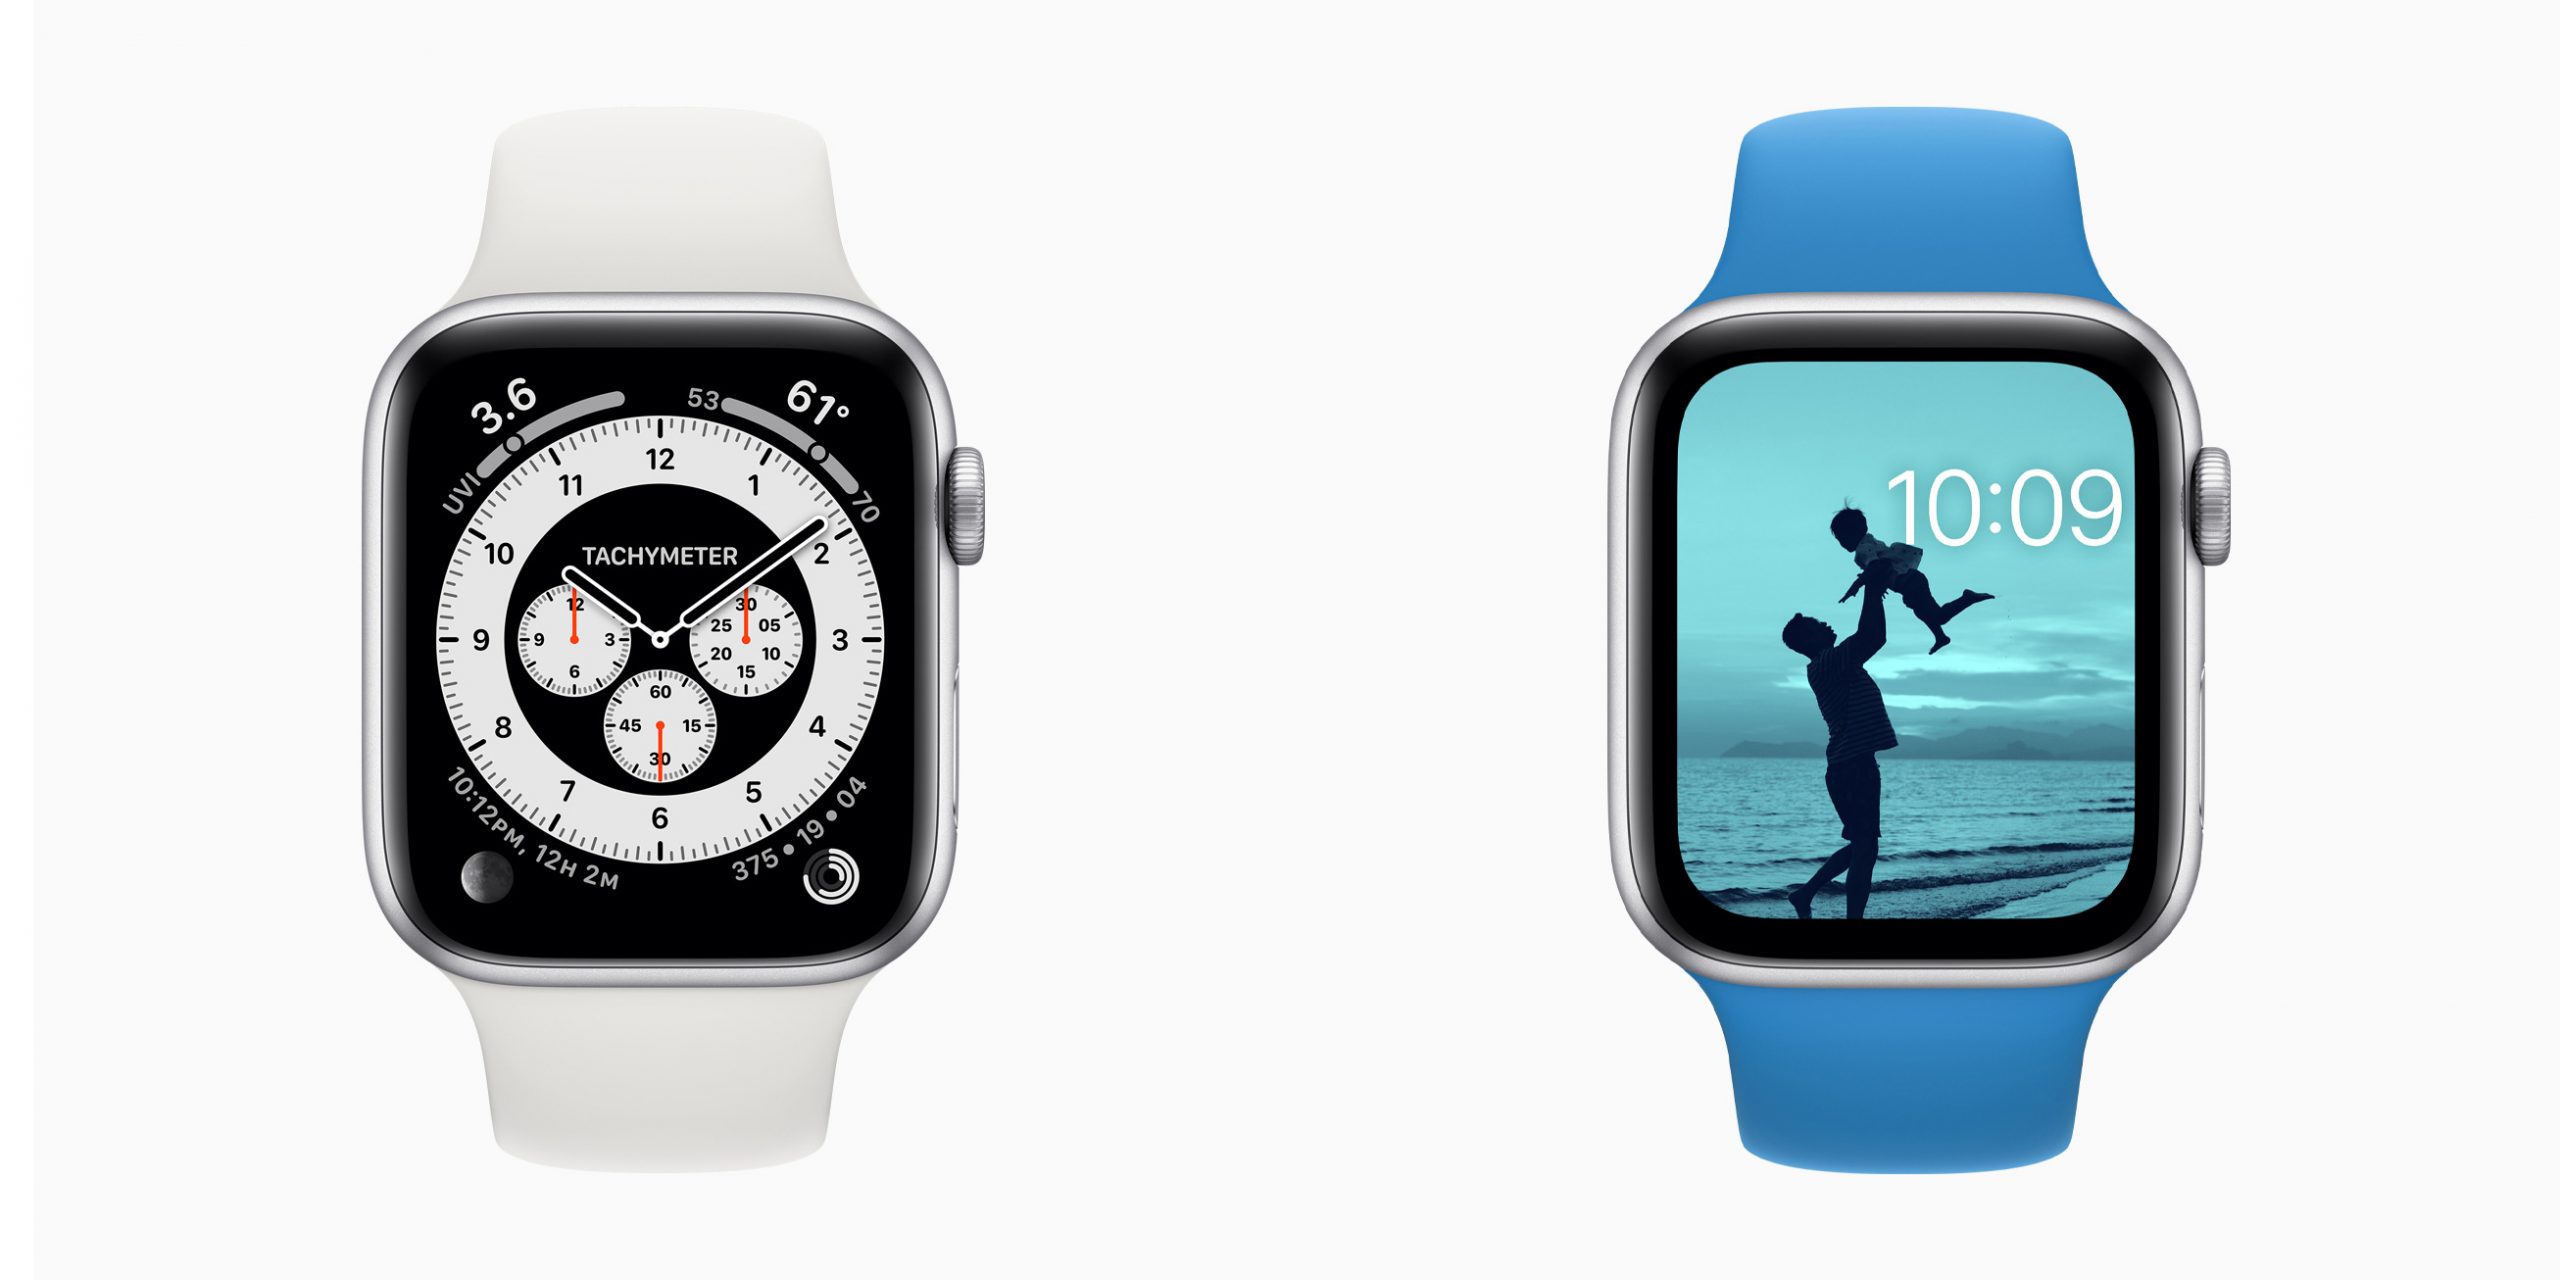 Apple анонсировала watchOS 7 для часов